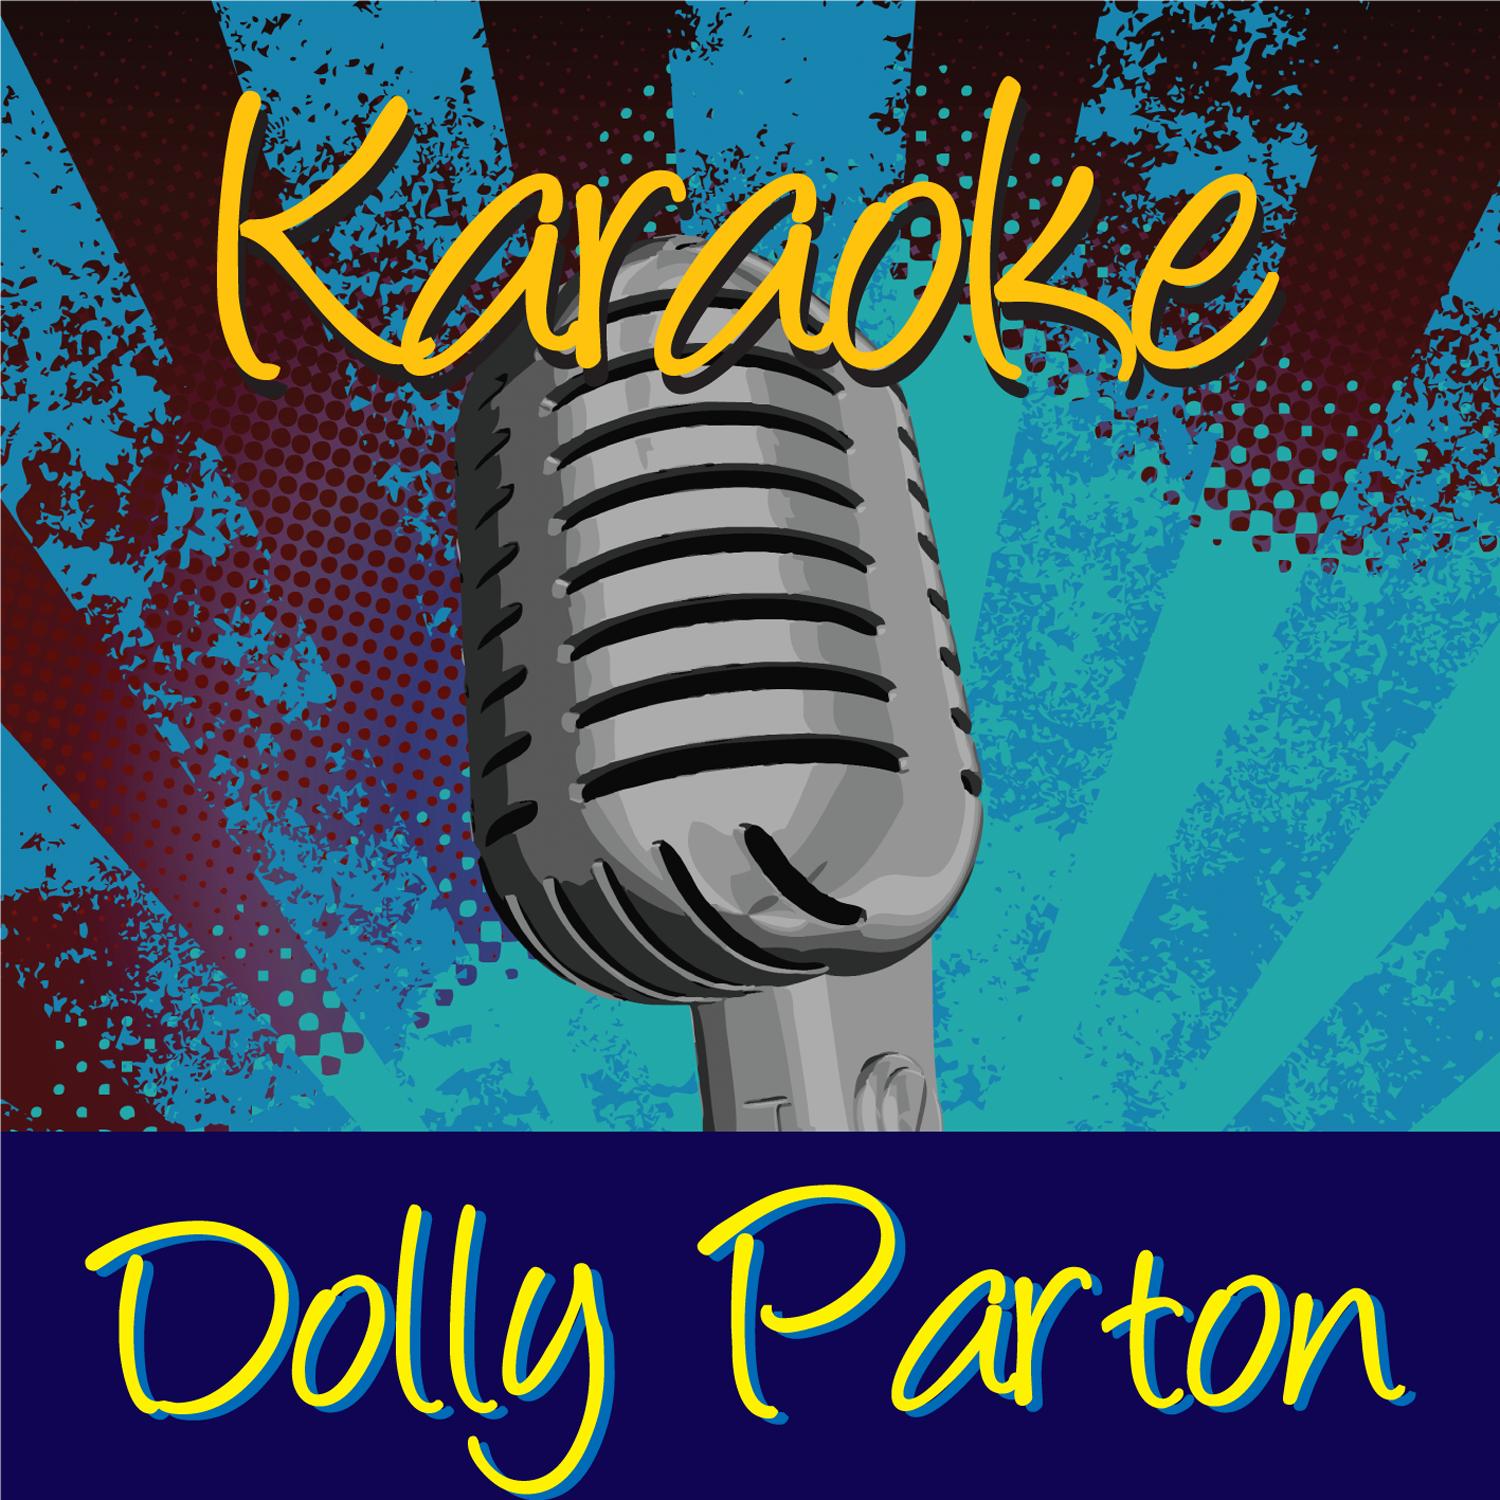 Karaoke - Dolly Parton